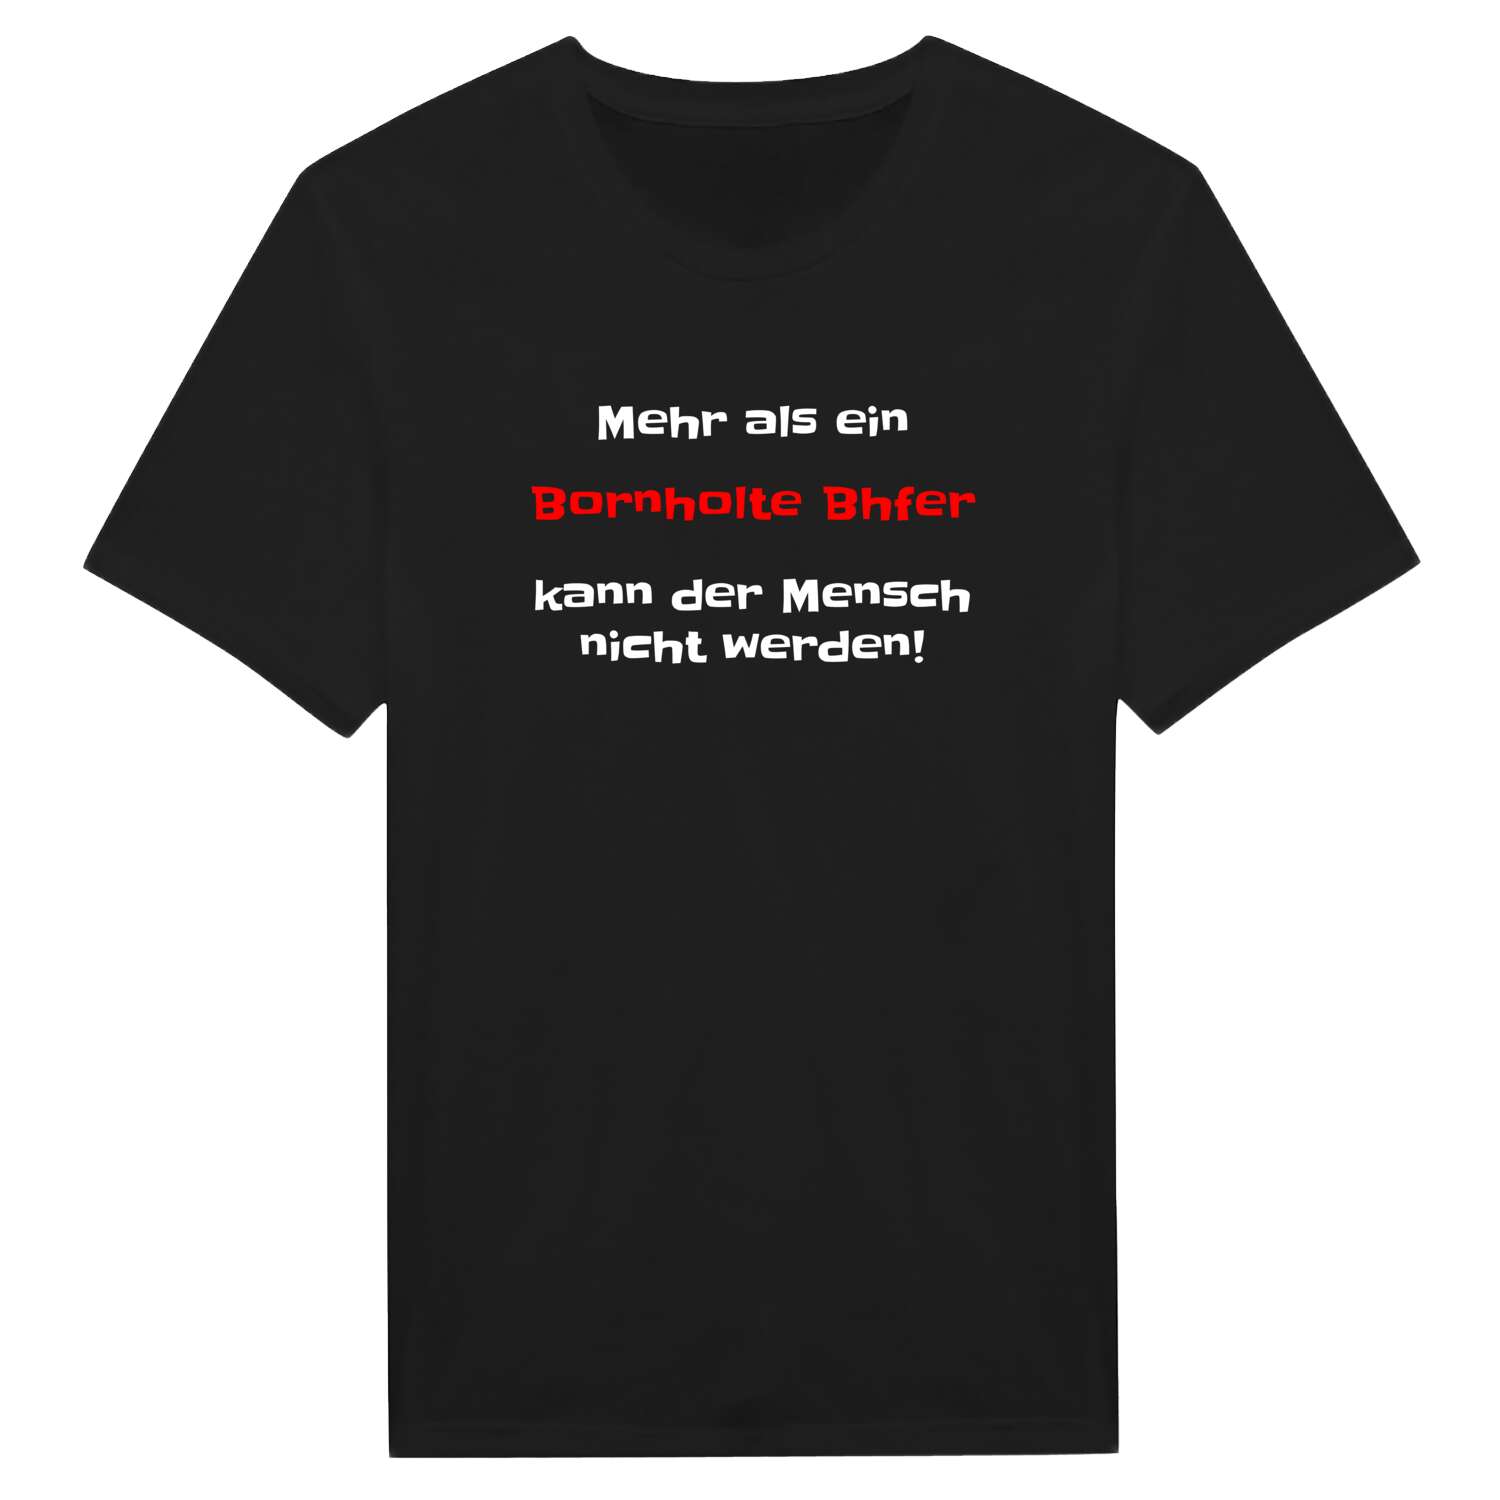 Bornholte Bhf T-Shirt »Mehr als ein«